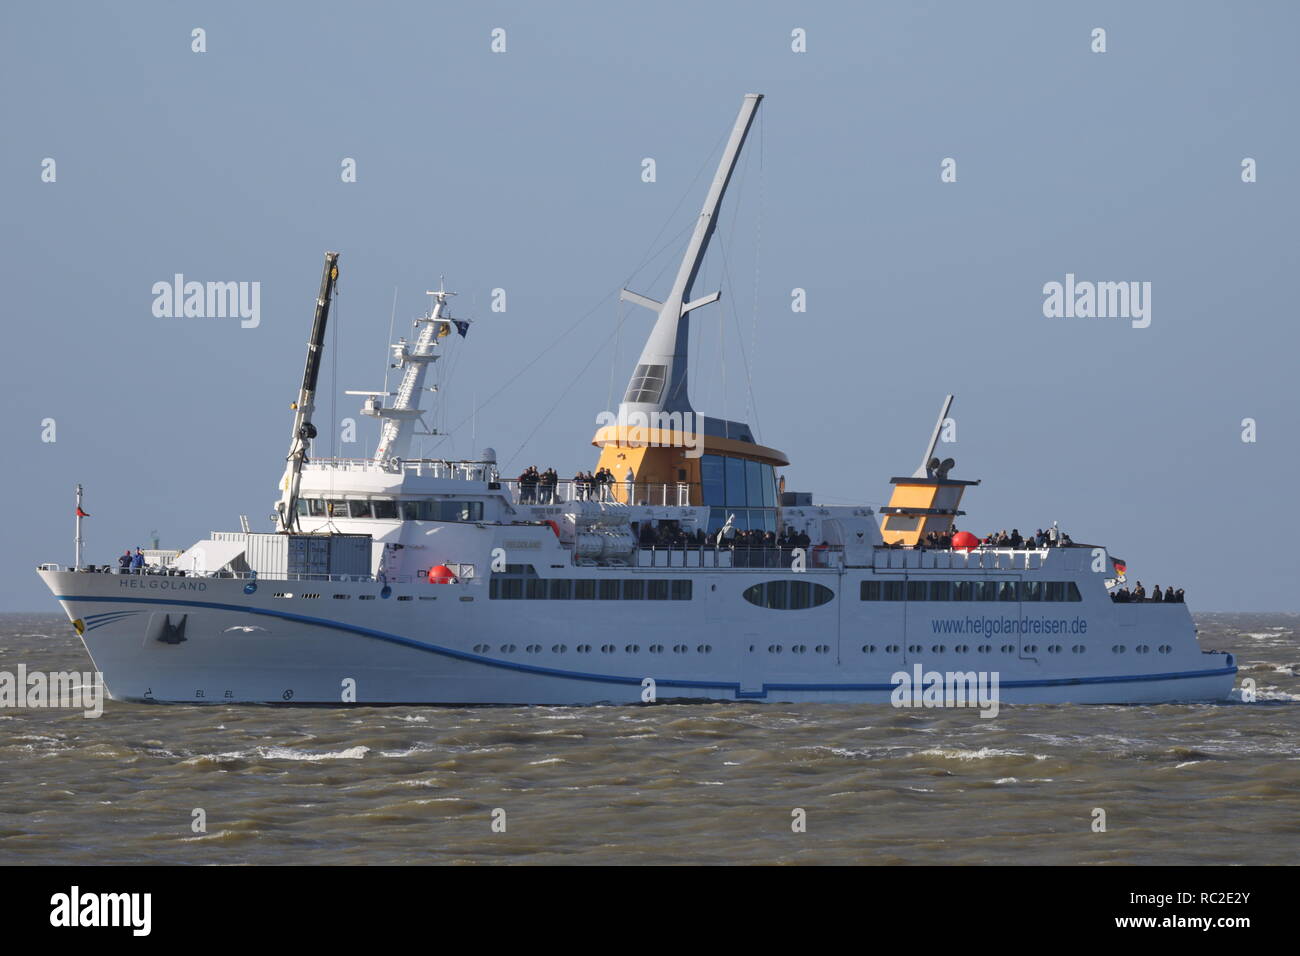 Le navire à passagers Helgoland arrive le 20 mars 2016 au port de Cuxhaven venant de l'île de Helgoland. Banque D'Images